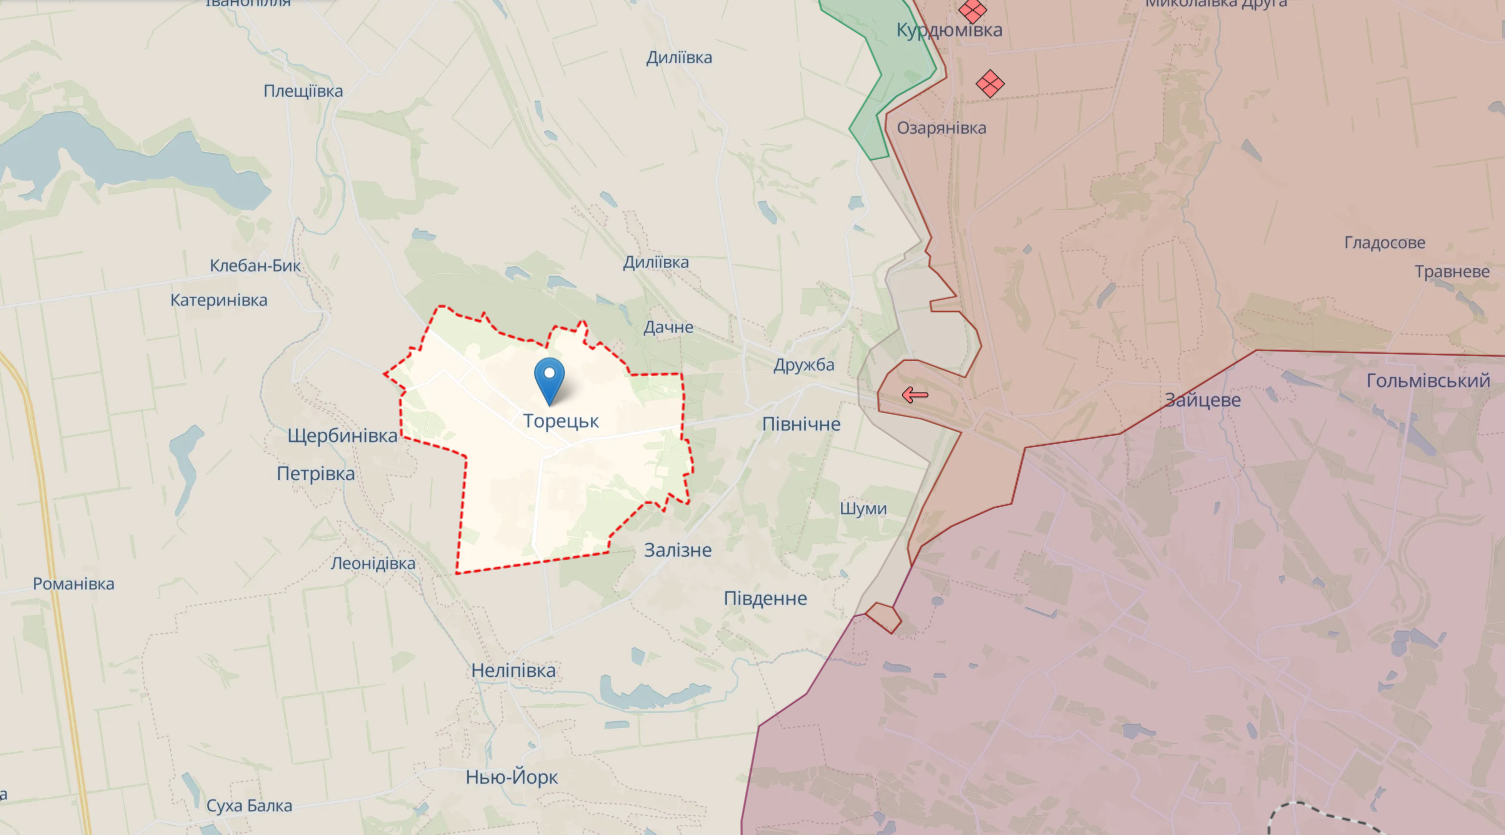 ГУР: Силы обороны сломали планы врага по оккупации Боровой в Харьковской области